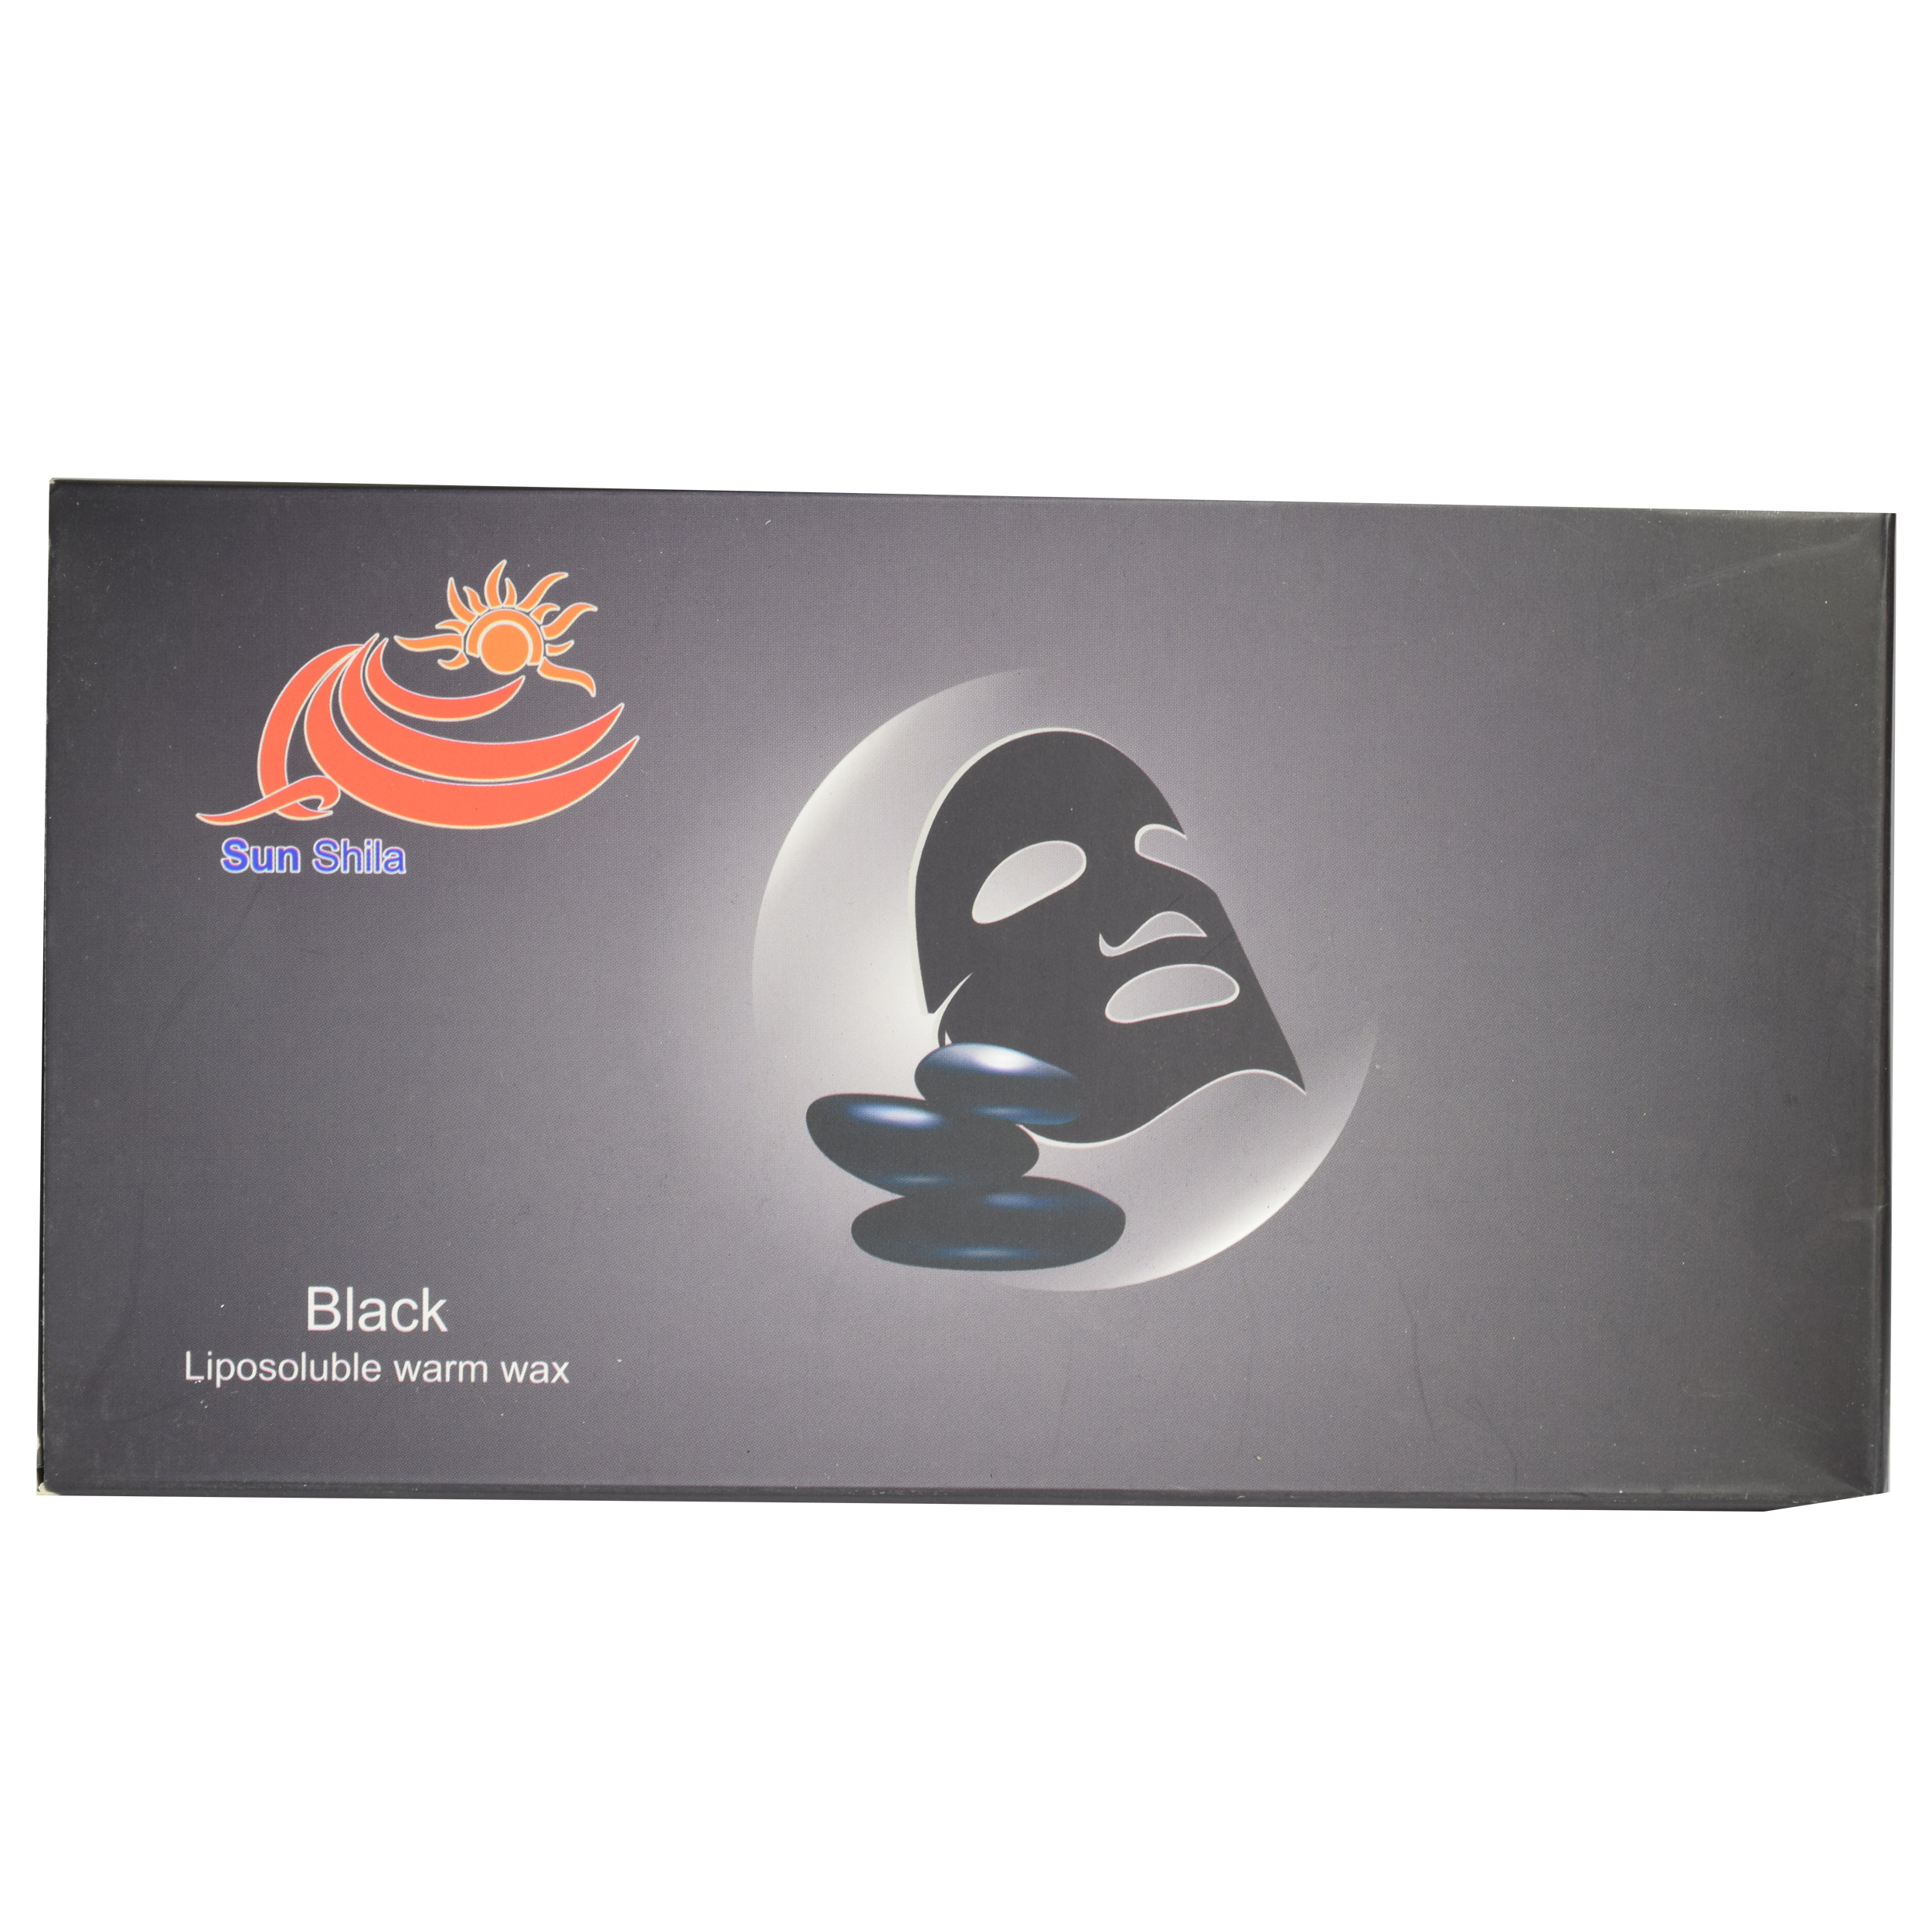 وکس موبر سان شیلا مدل Black حجم 500 گرم